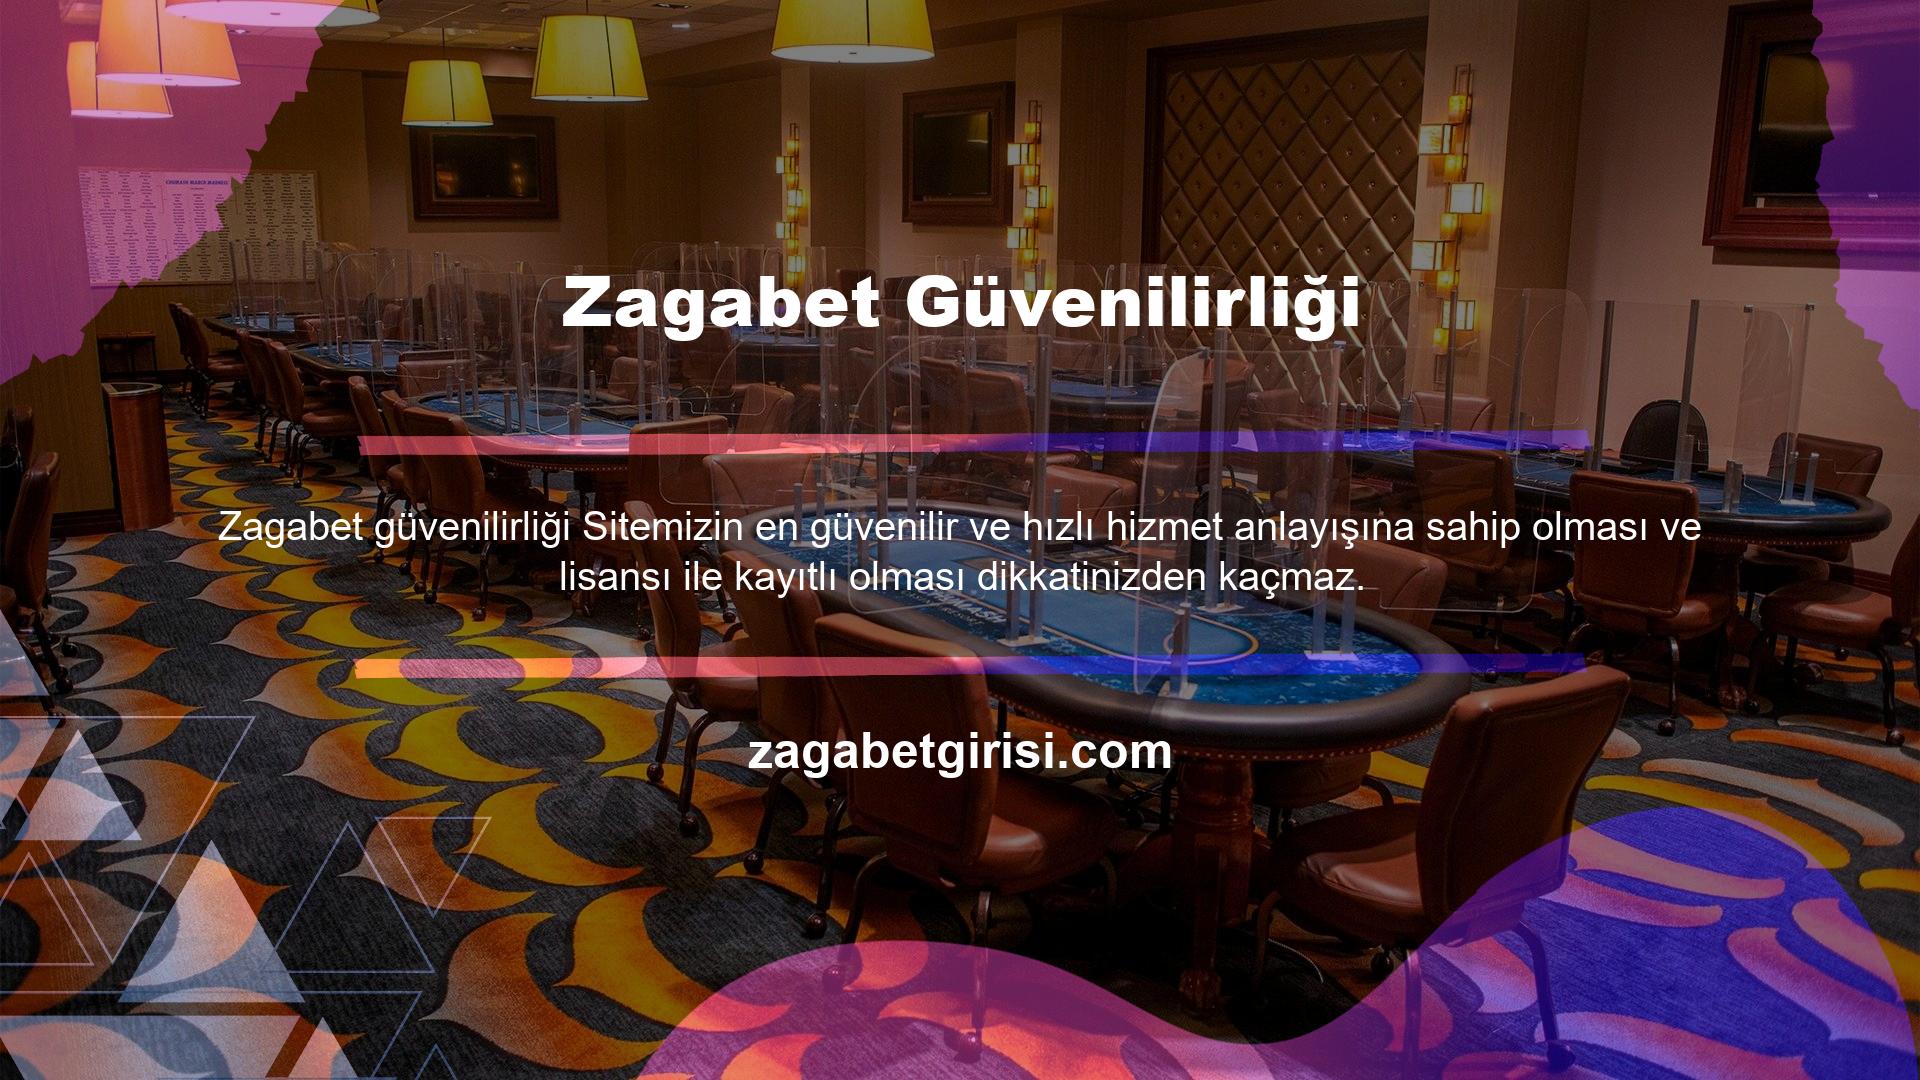 Müşteri memnuniyetini ön planda tutma lisansına sahip olan Zagabet slotları, kurulduğu günden bu yana ve Türkiye pazarına girdiği günden bu yana bu hedefinden hiç sapmadı